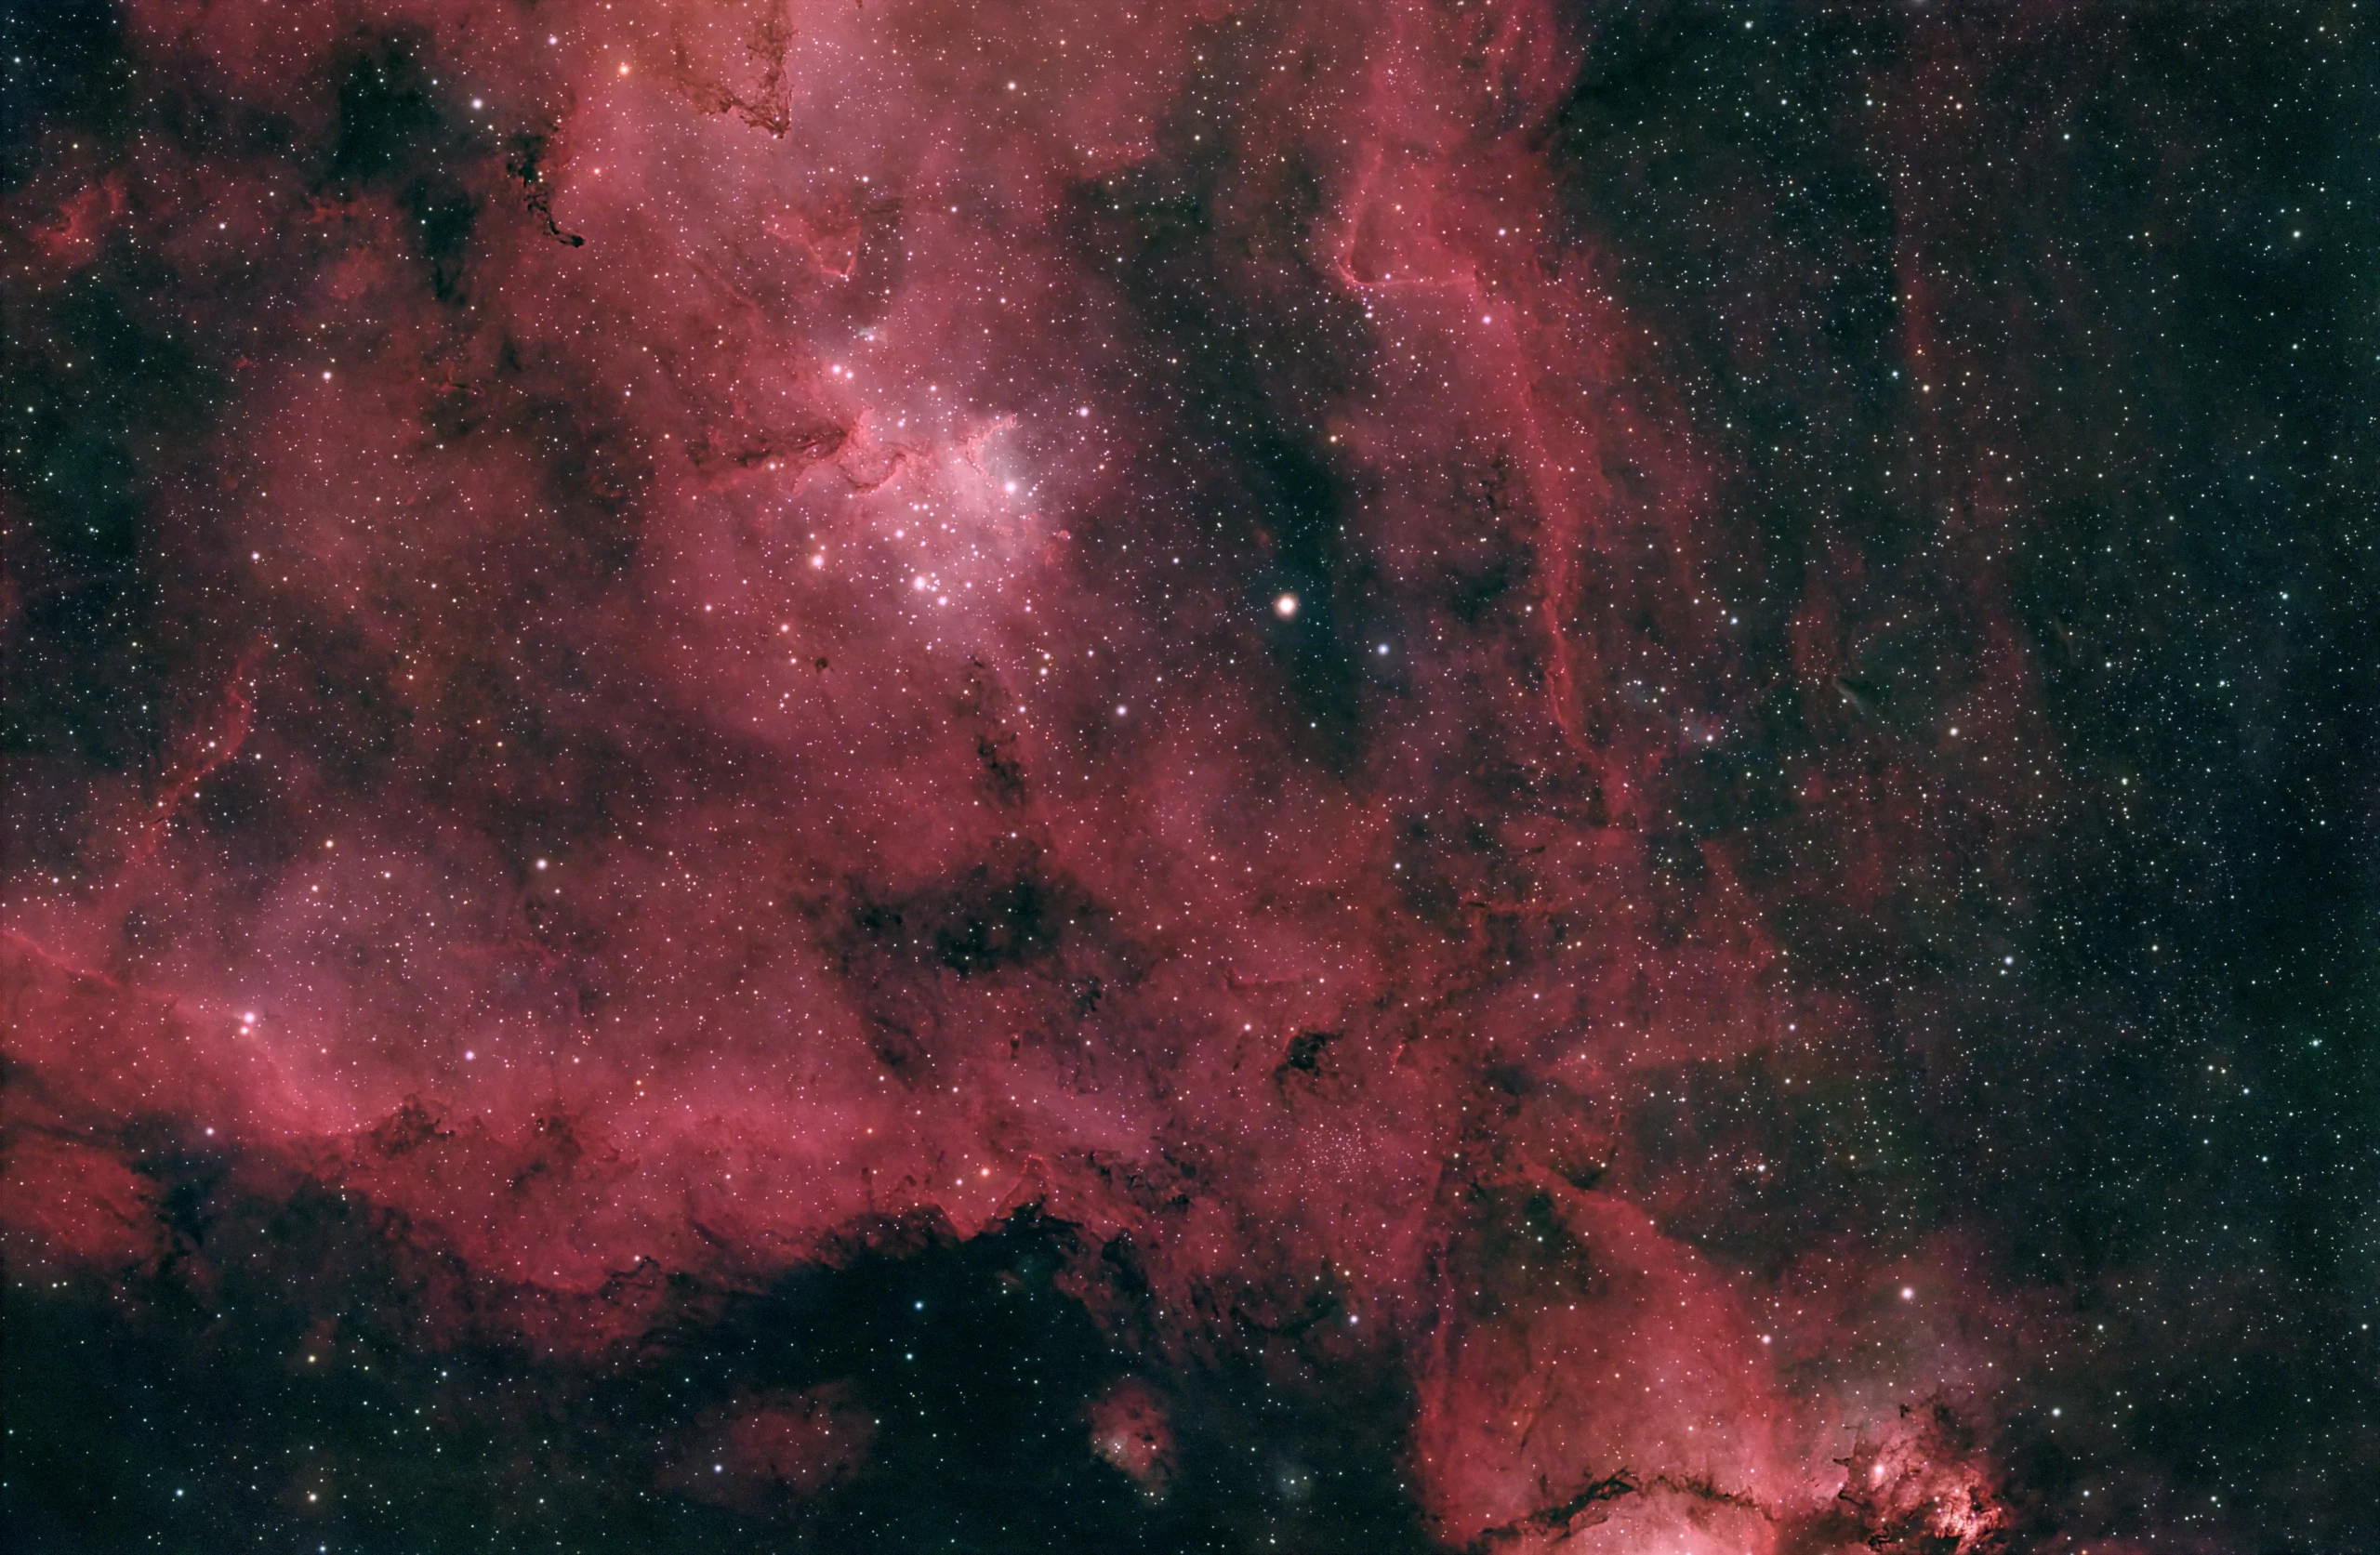 Heart Nebula – IC 1805